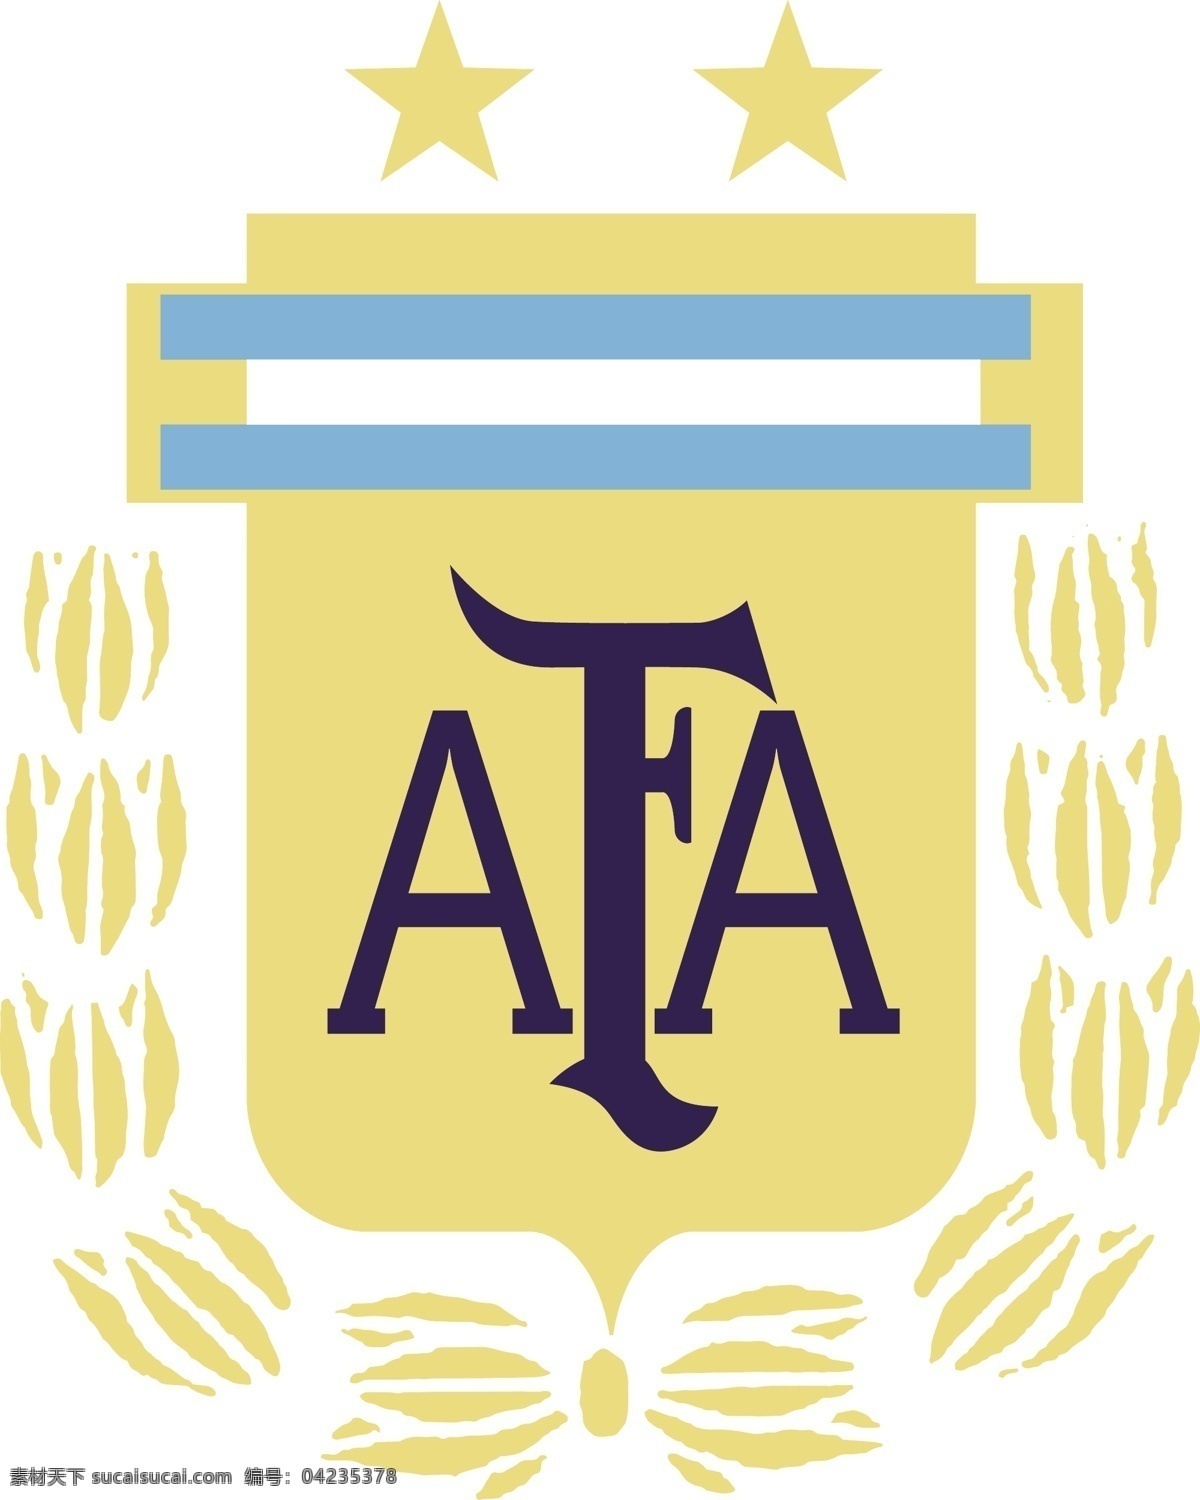 阿根廷国家队 阿根廷 2018 世界杯 梅西 fifa 足球 最新标志 标志 afa 美洲杯 南美 冠军 迪马利亚 伊瓜因 迪巴拉 足球标志 logo设计